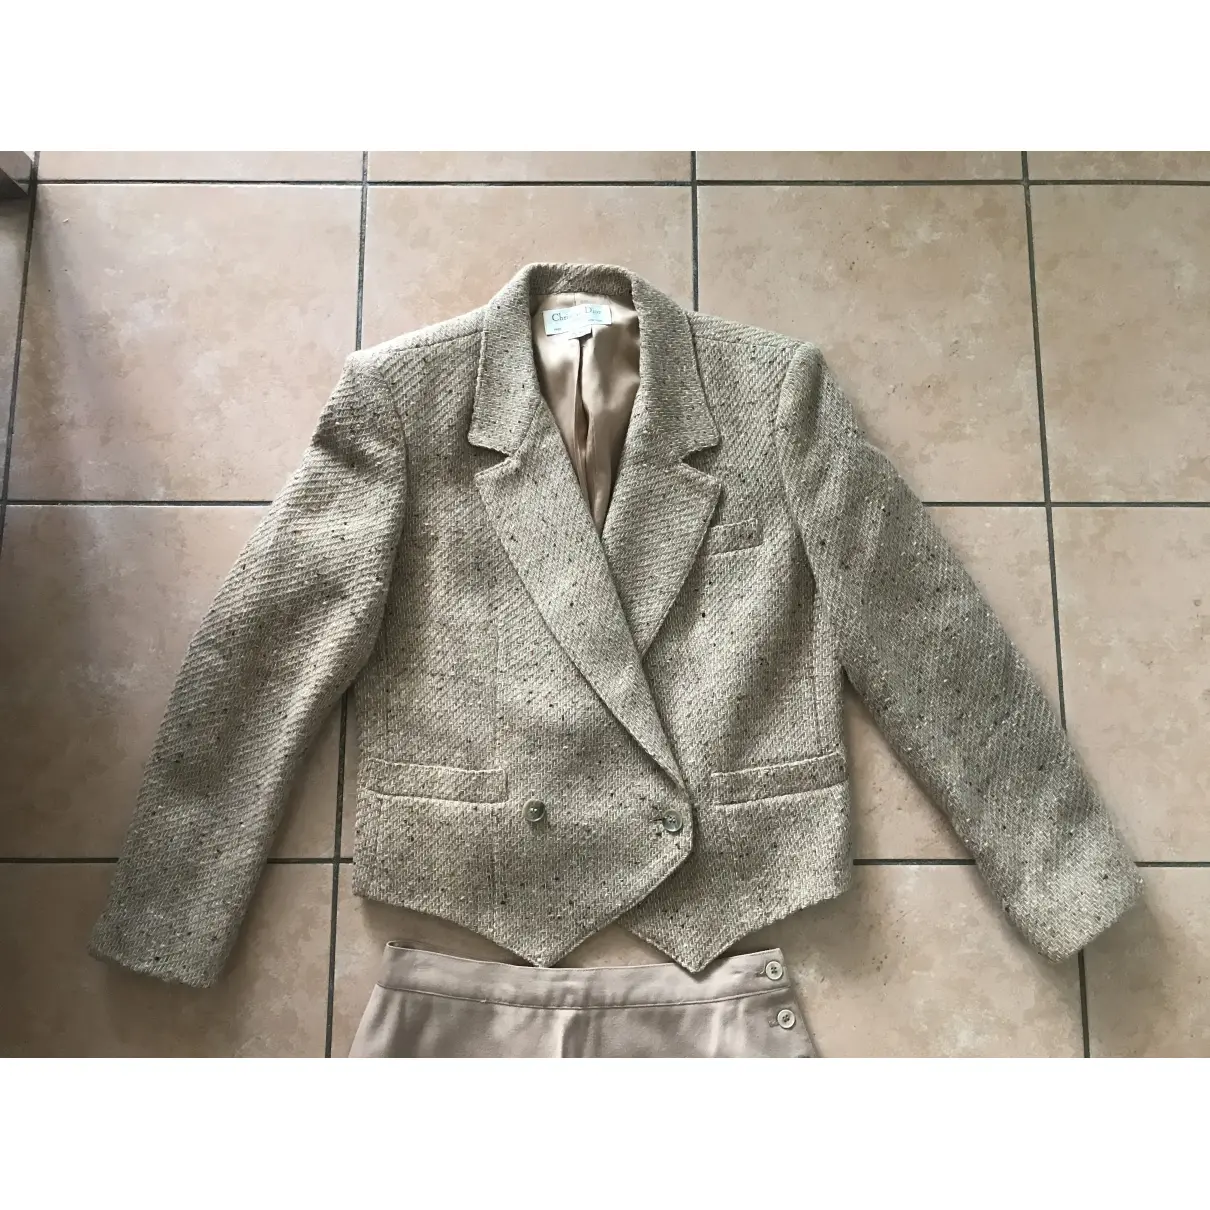 Wool suit jacket Dior - Vintage